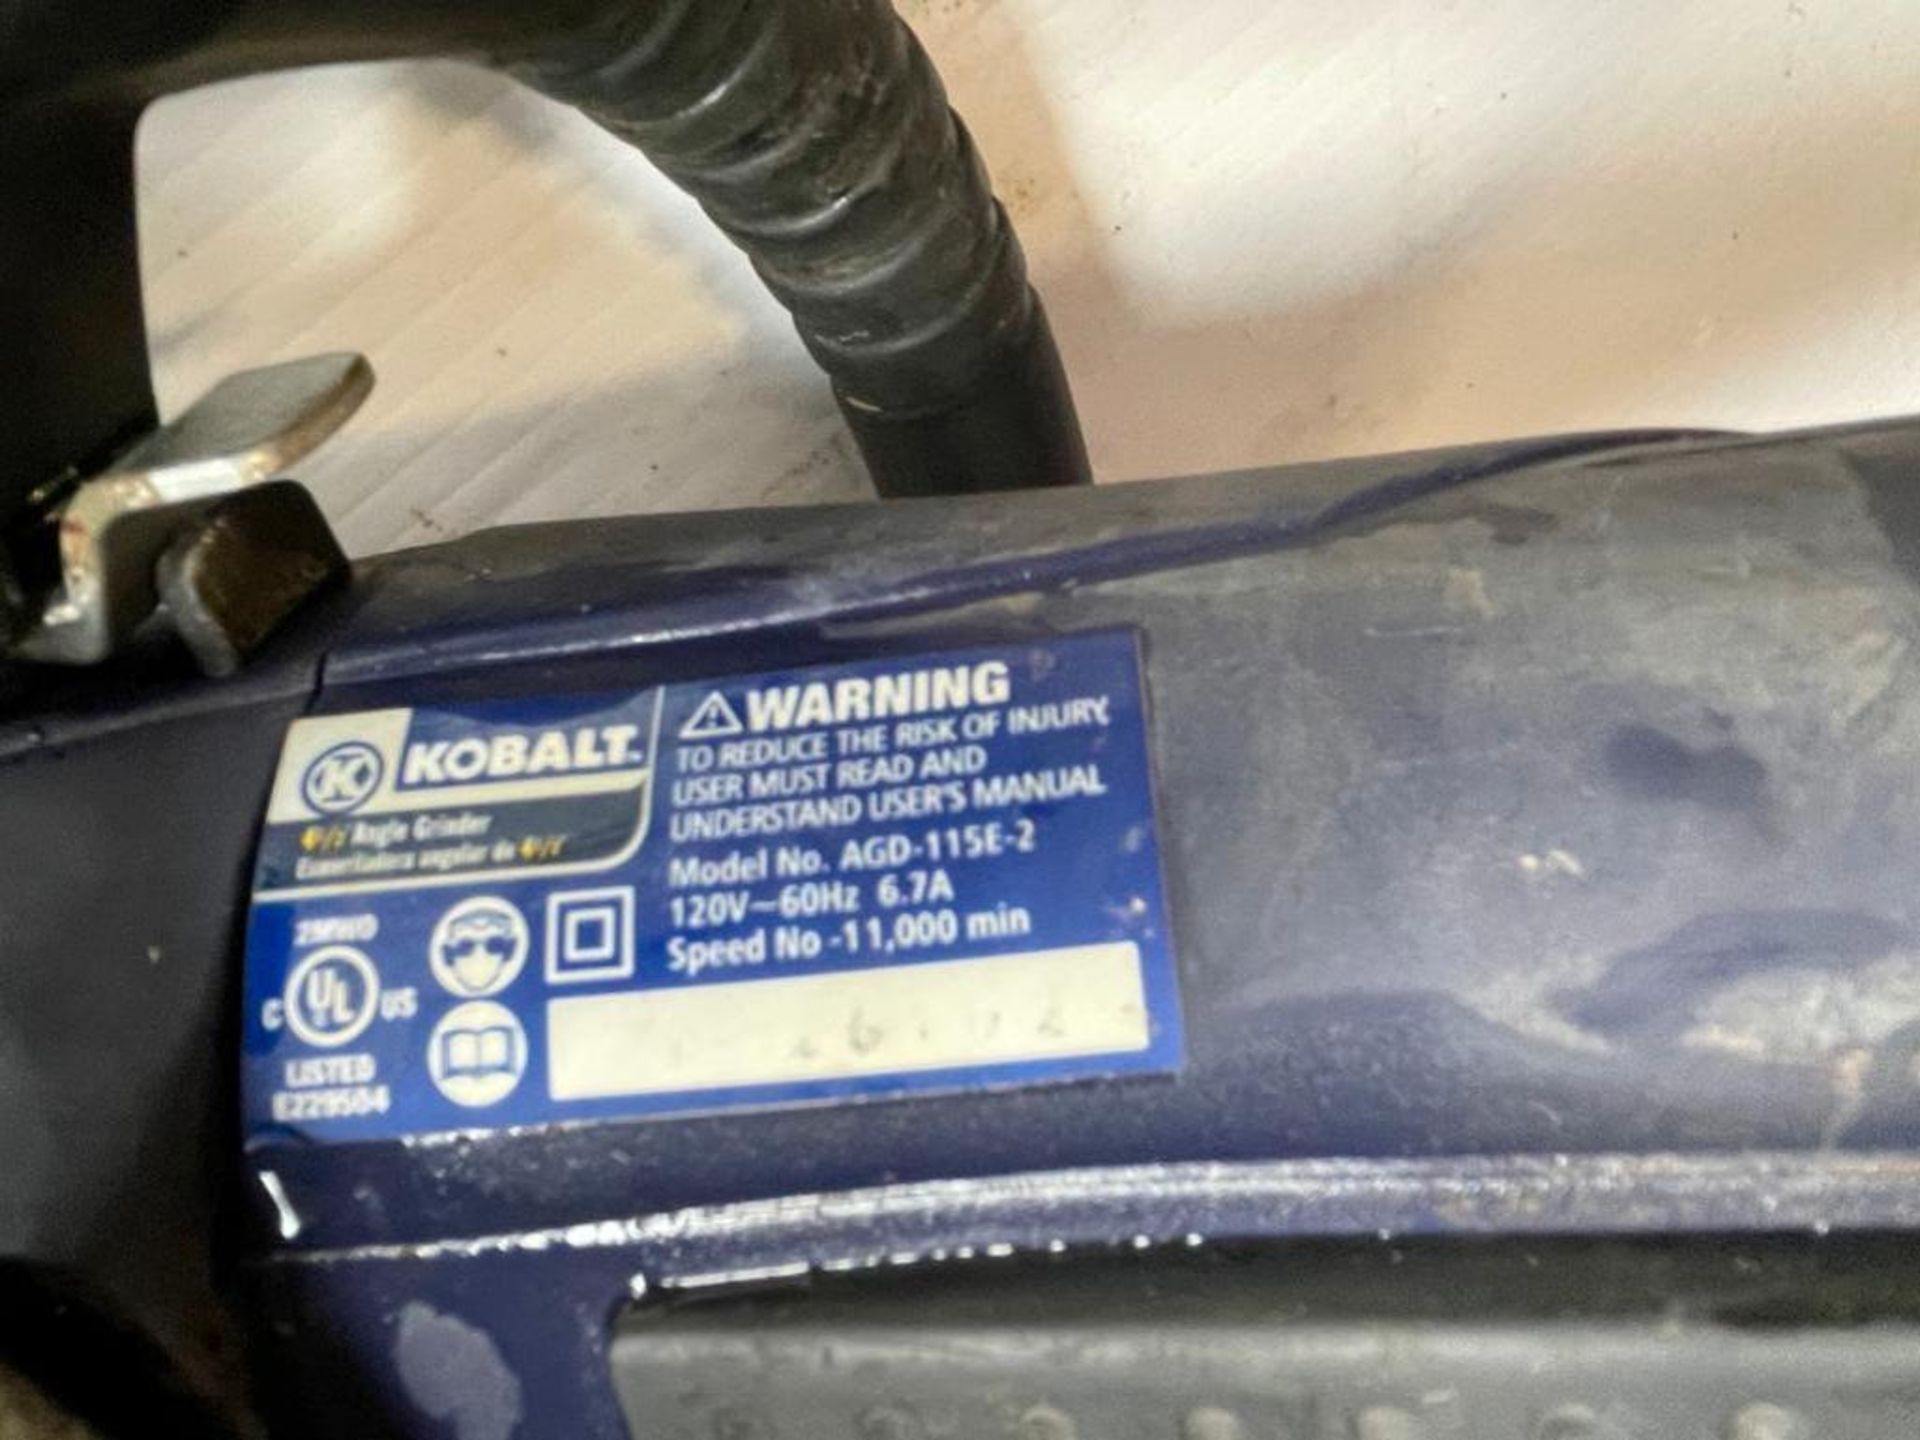 Kobalt 4 1/2" Angle Grinder, 120V. Located in Hazelwood, MO - Image 6 of 6